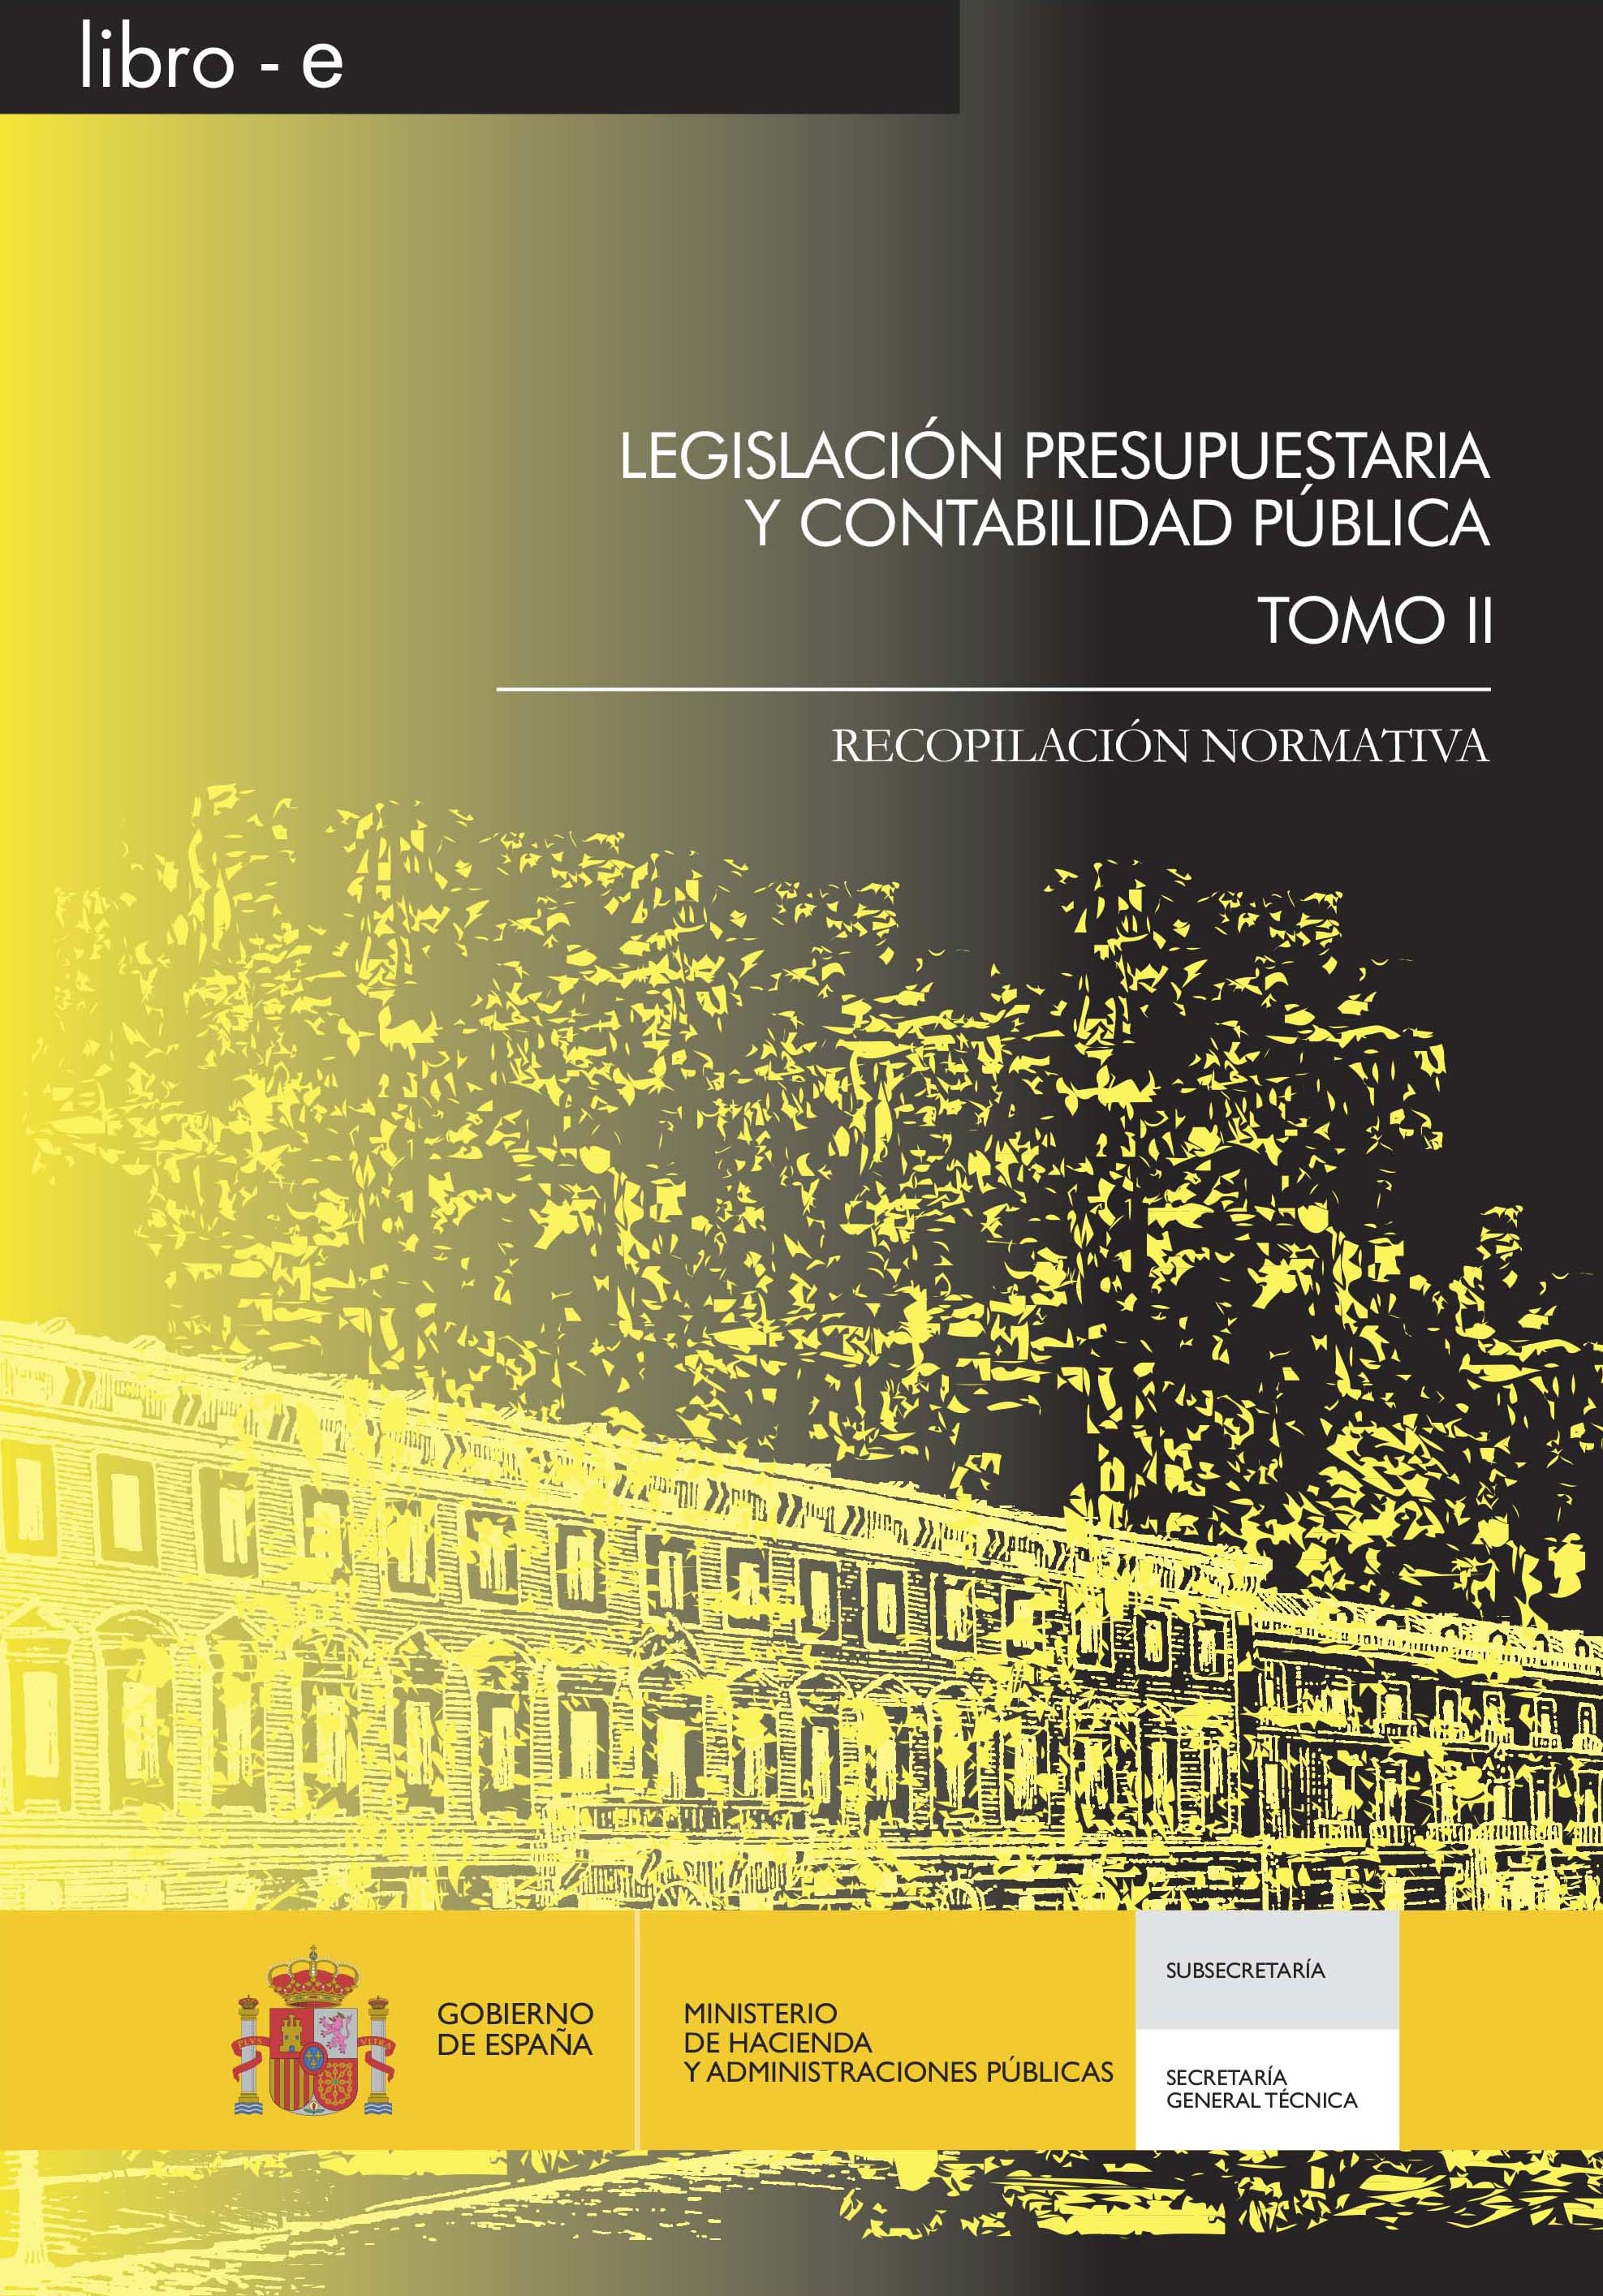 Portada del libro: LEGISLACION PRESUPUESTARIA Y CONTABILIDAD PUBLICA. RECOPILACION NORMATIVA. TOMO II Libro-e